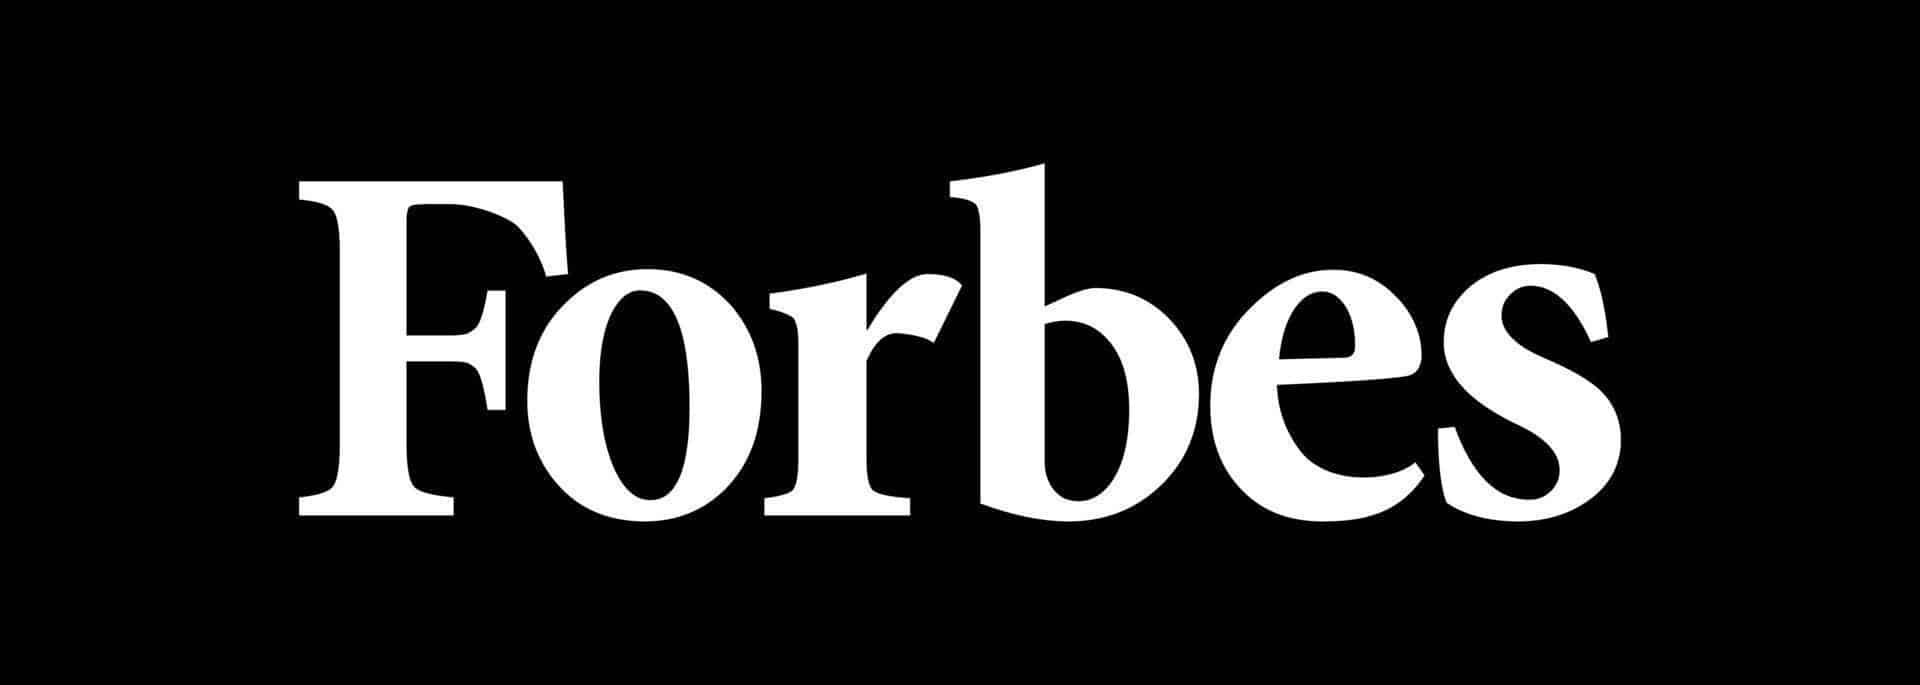 Forbes - Presse - TAURUS Sicherheitstechnik